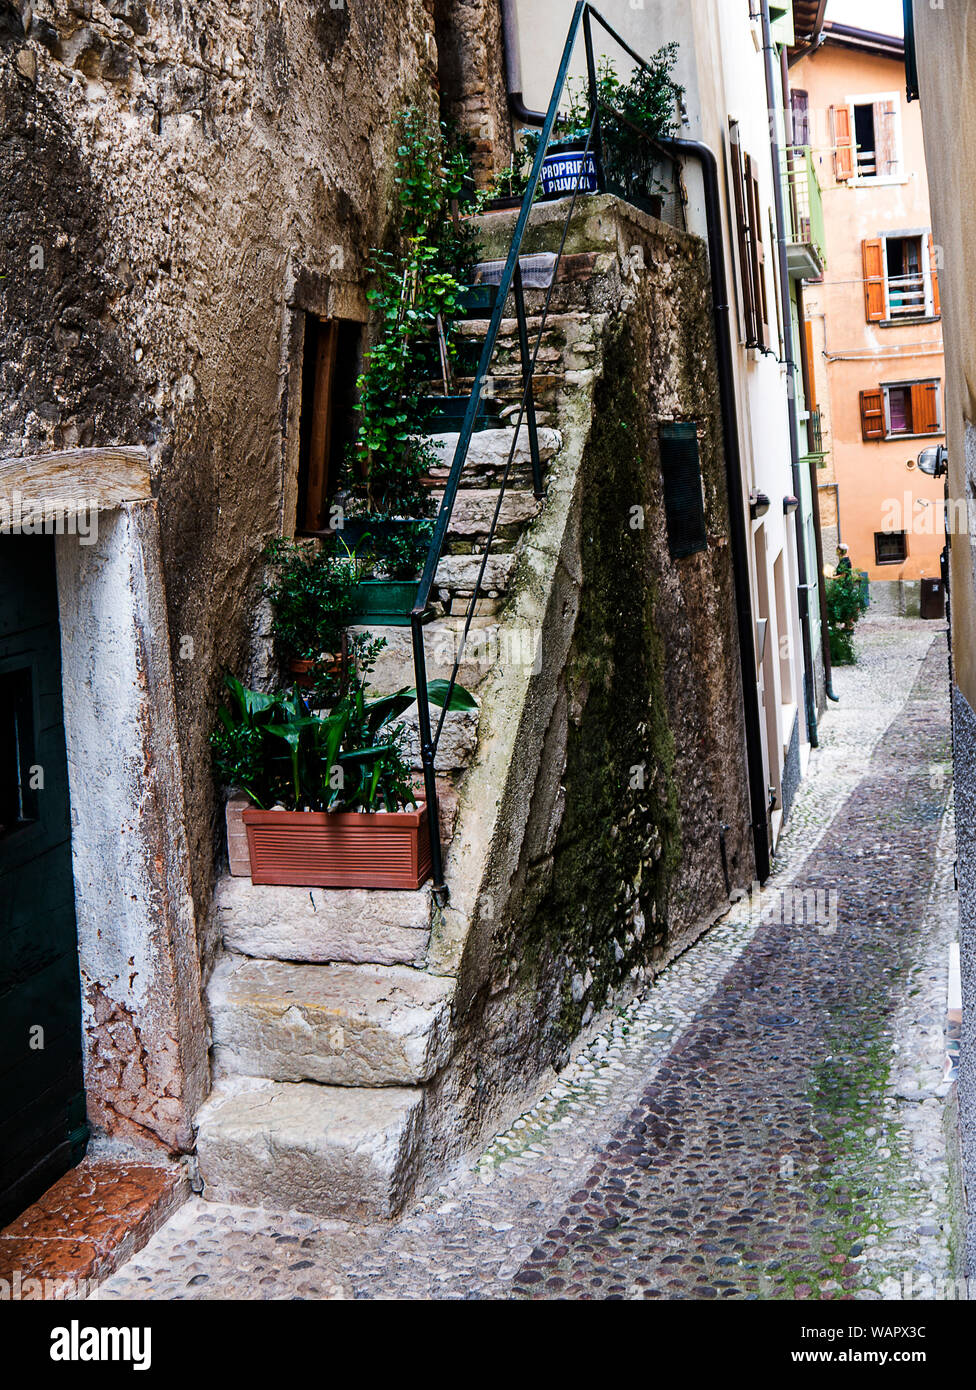 Malcesine ist eine der schönen Städte am Gardasee in Norditalien mit einem Scalieri schloss die Bewachung der Stadt. Es ist ein beliebtes Ziel für Touristen Stockfoto